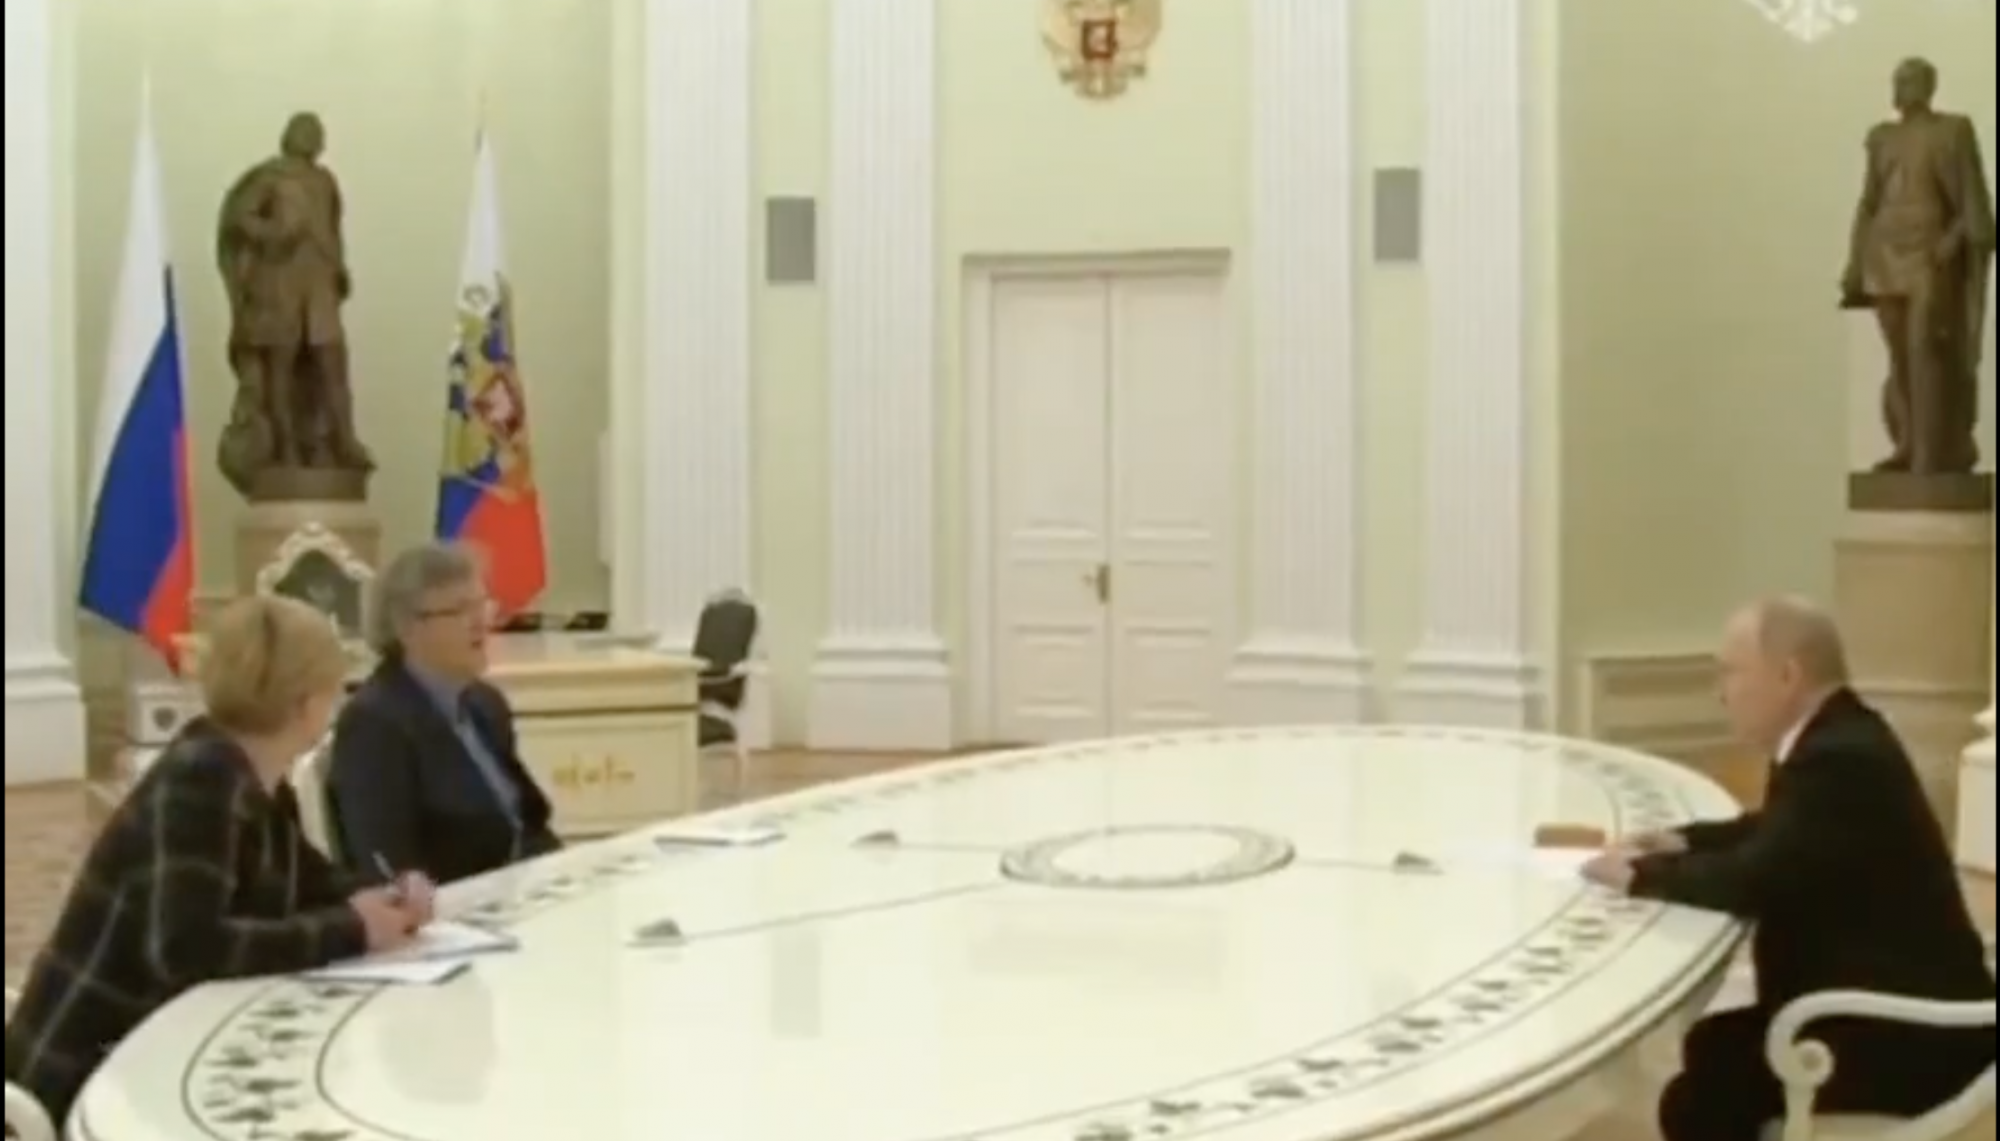 Emir Kusturica meglátogatta Putyint, a háború támogatása után nyíltan pénzért kuncsorgott, Putyin pedig jelezte, hogy fizetni fog